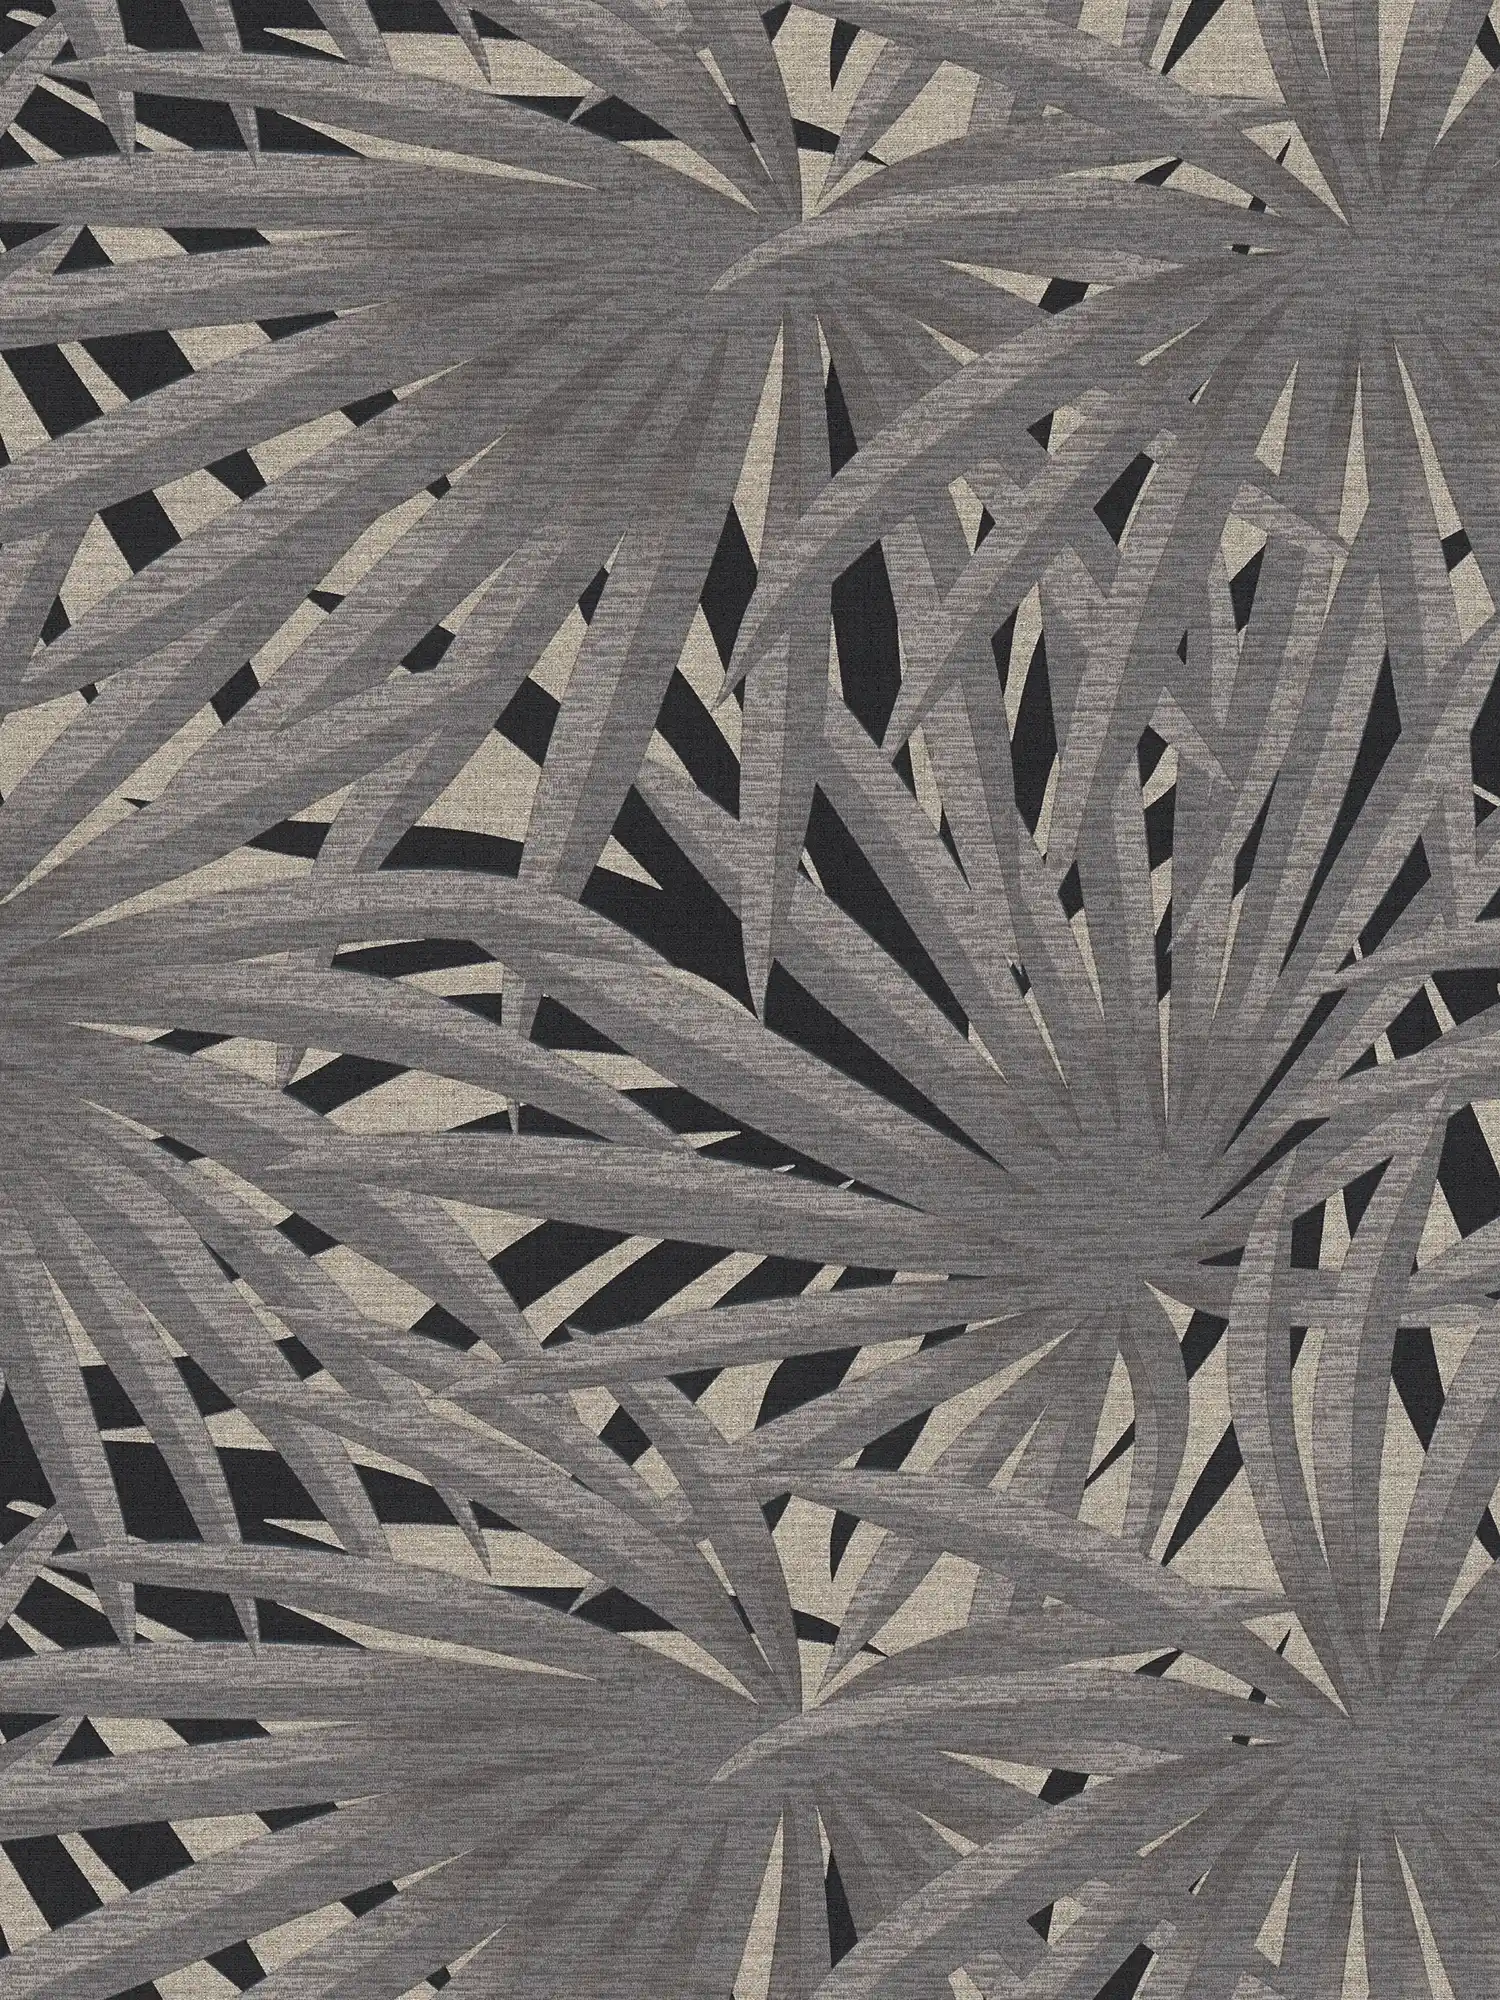 Carta da parati in tessuto non tessuto con effetto metallizzato - grigio, metallizzato, nero
